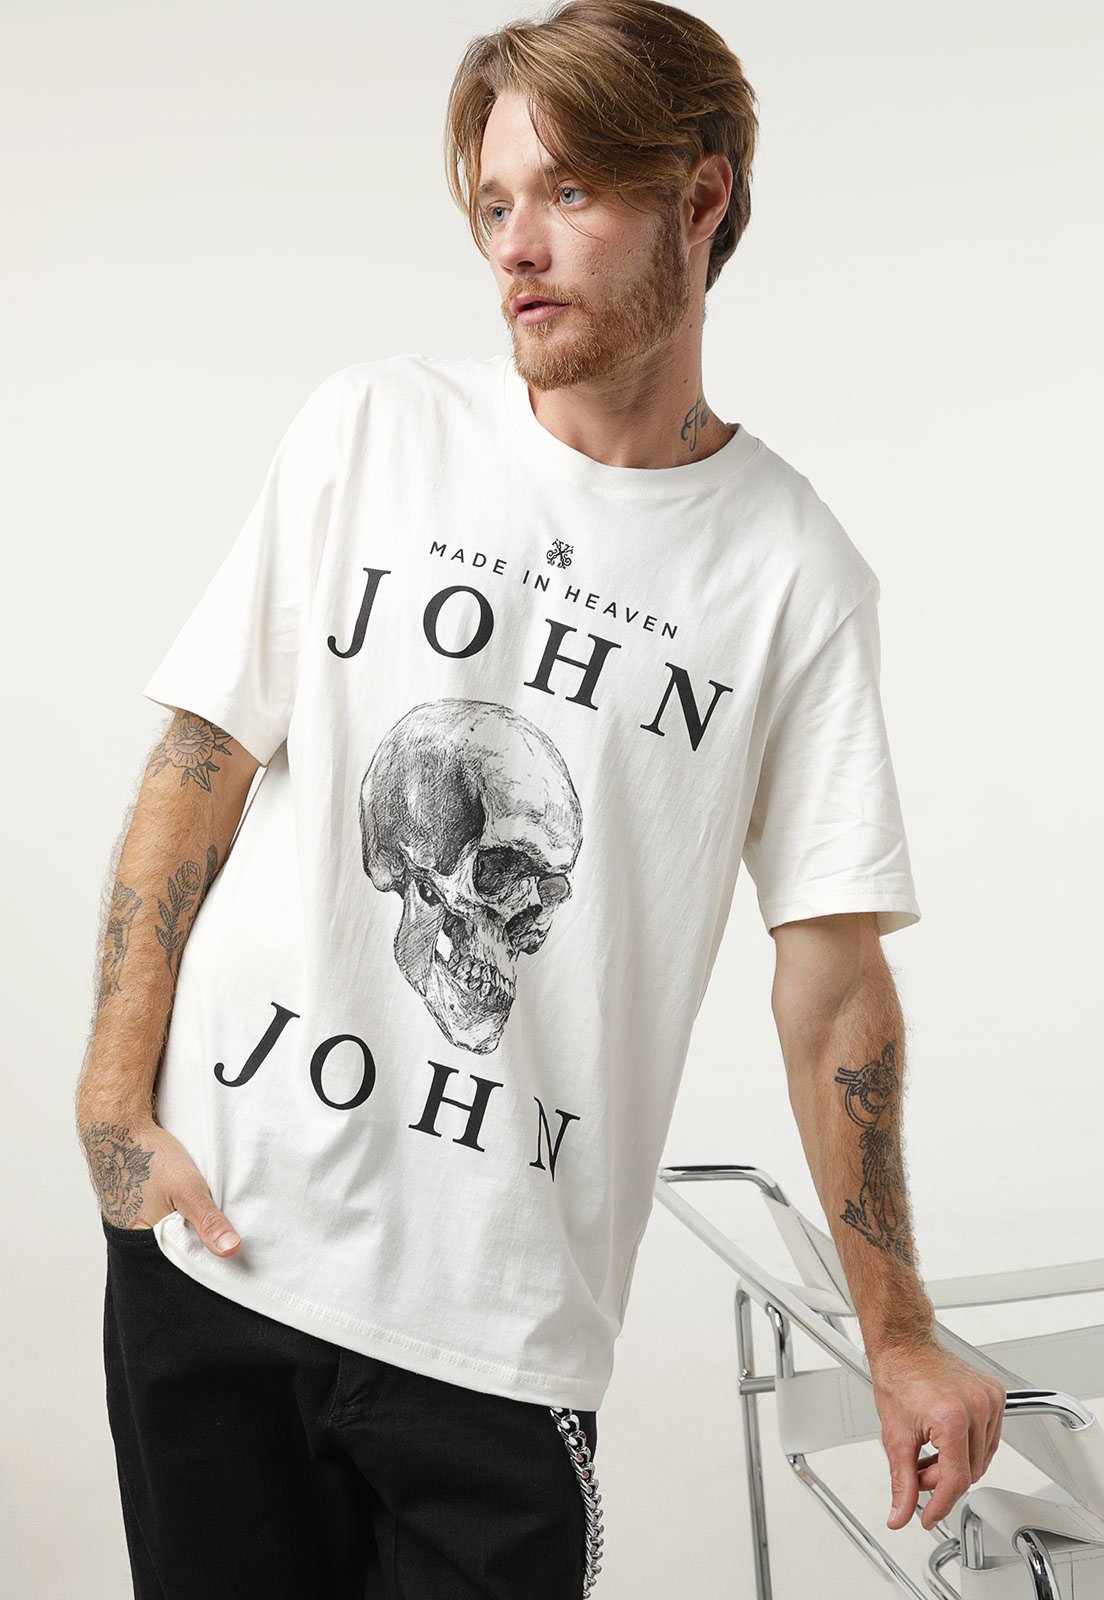 Camisa John John Masculina Fire Skull Branca 